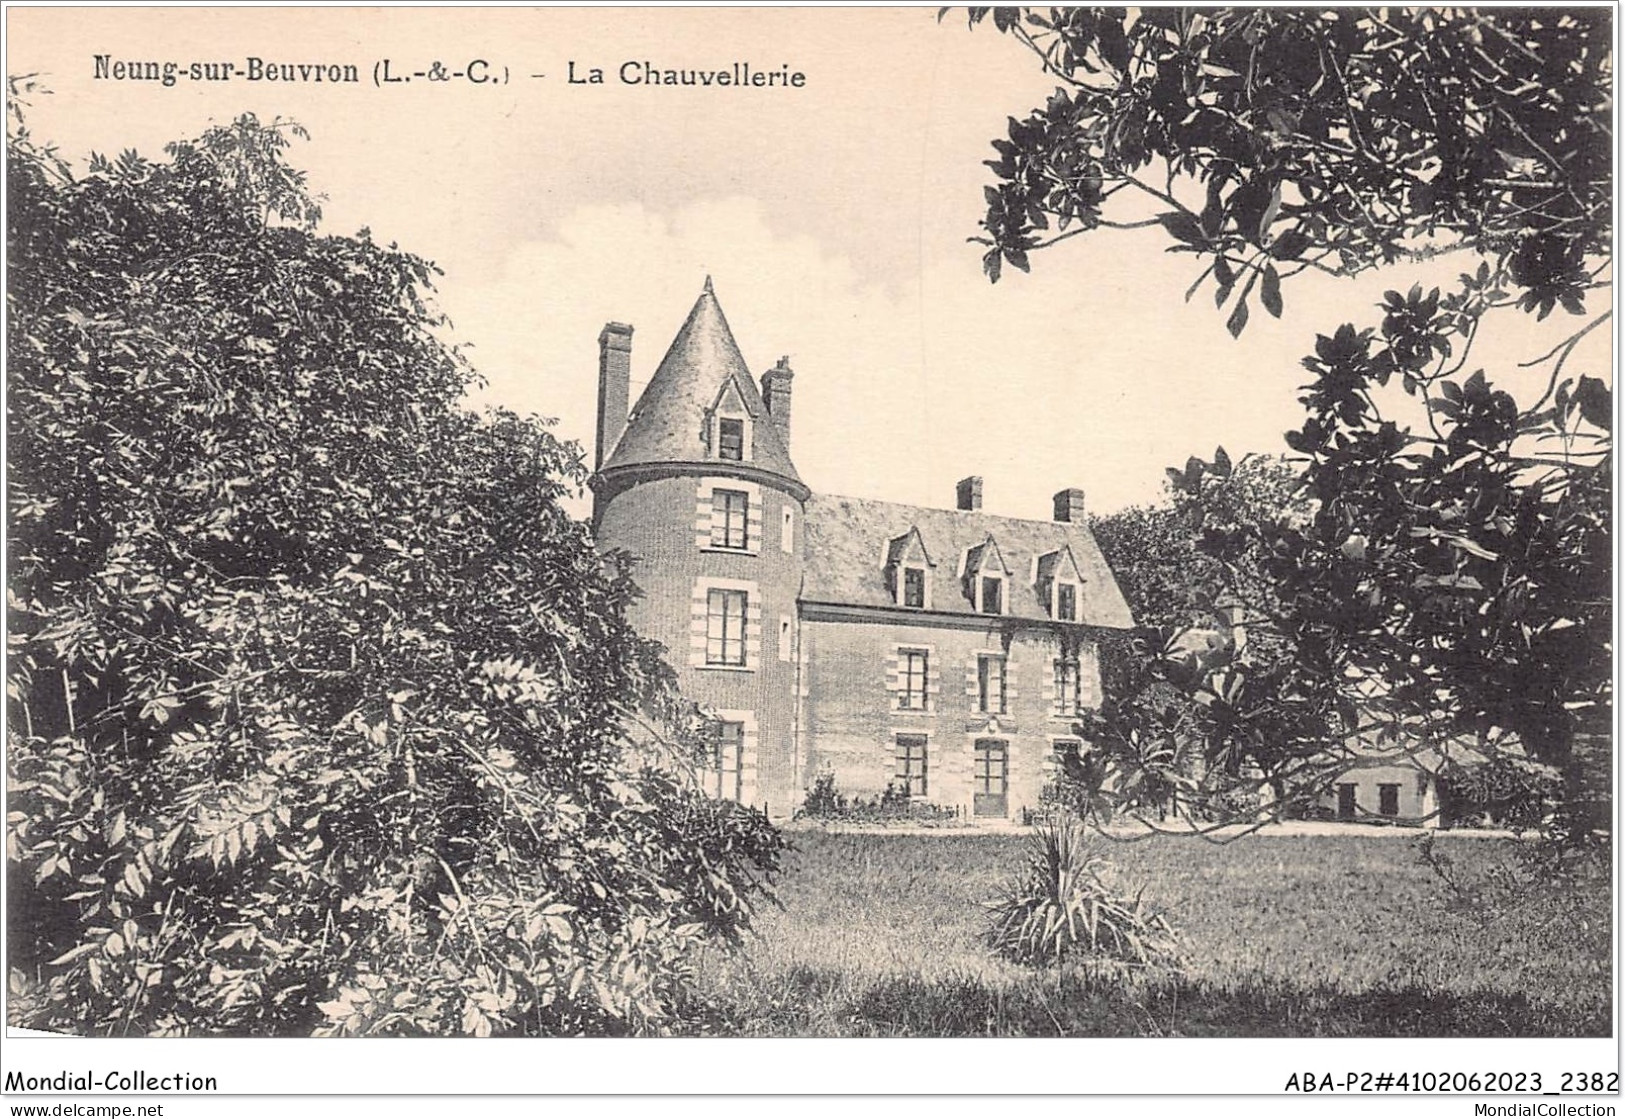 ABAP2-41-0135 - NEUG-SUR-BEUVRON - La Chauvellerie - Neung Sur Beuvron